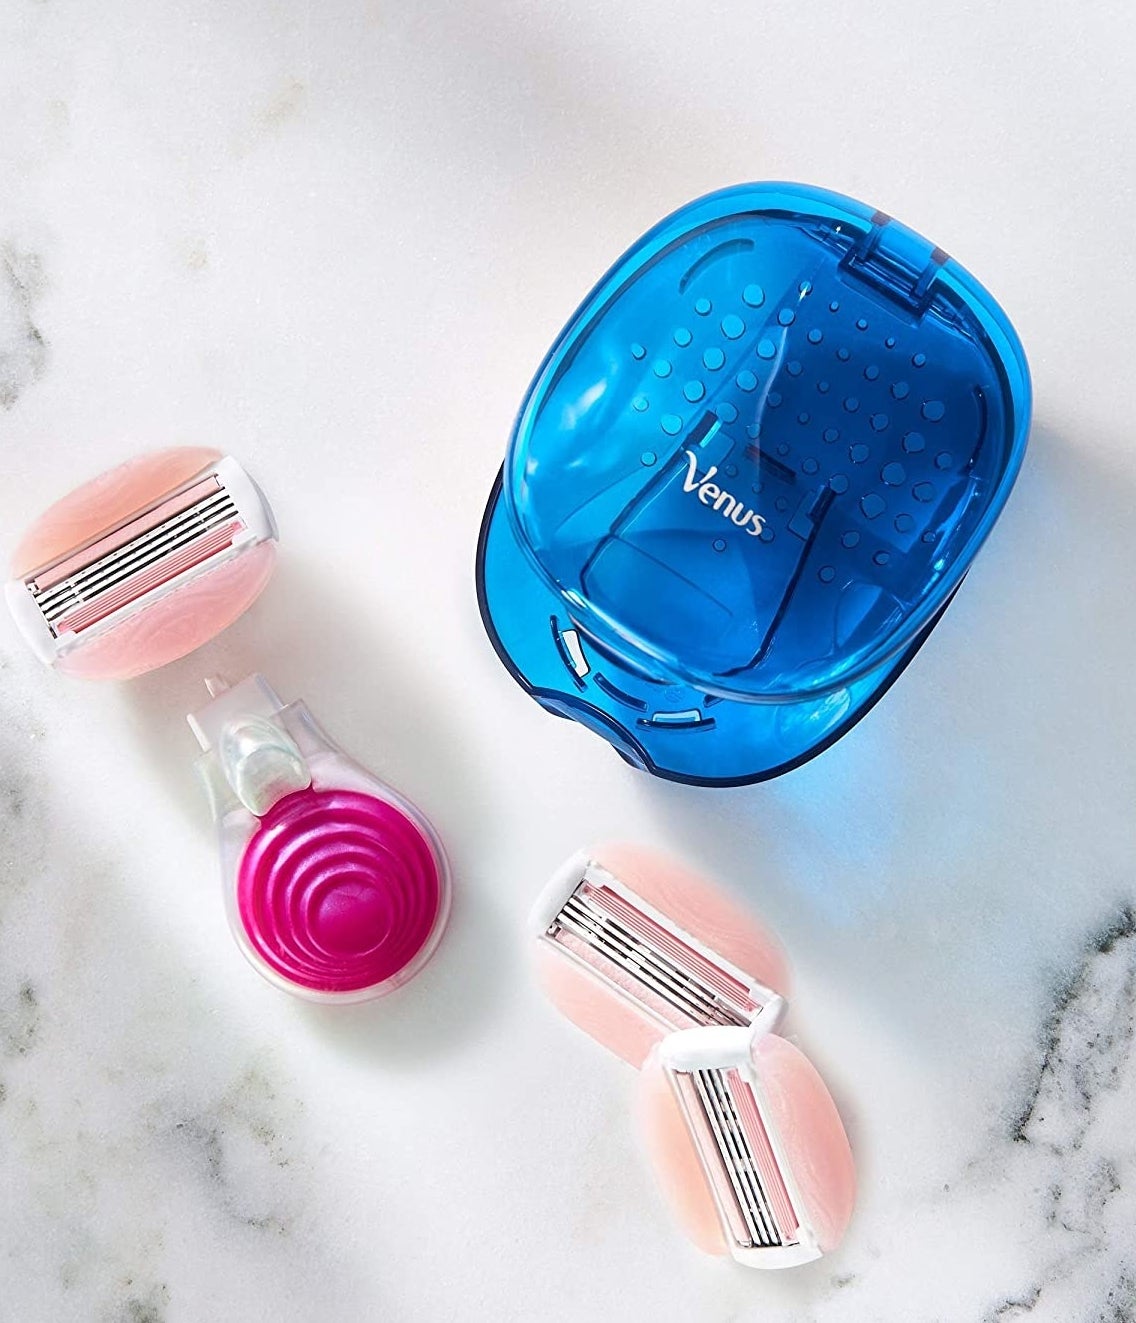 Mini pink razor in a blue case